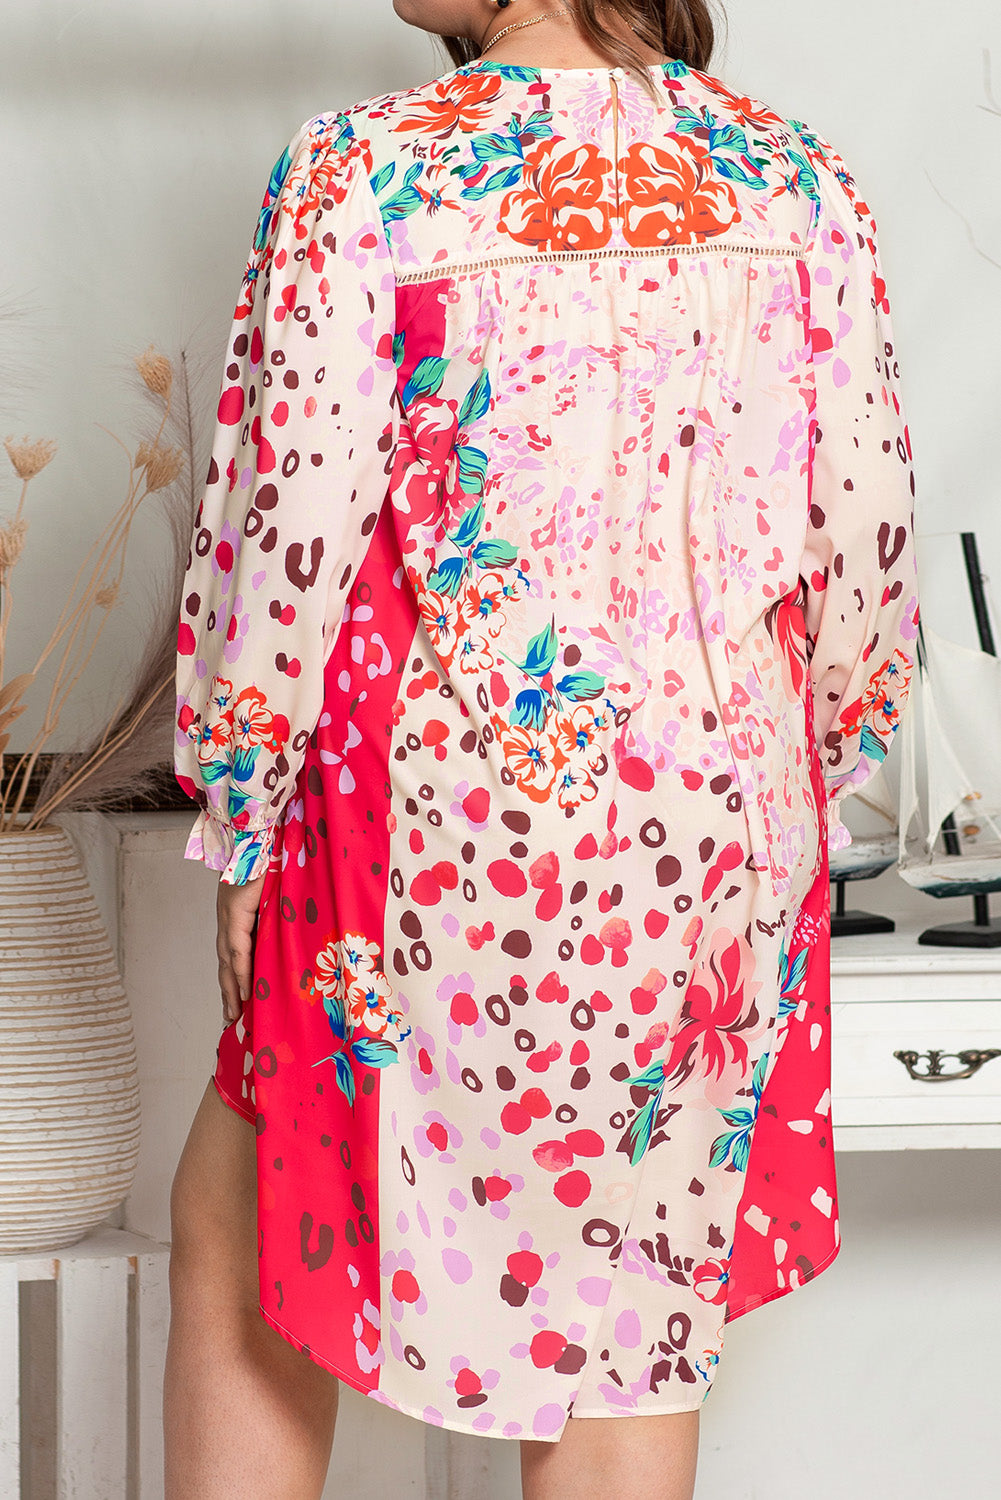 Roze-cvjetna haljina dugih rukava veće veličine